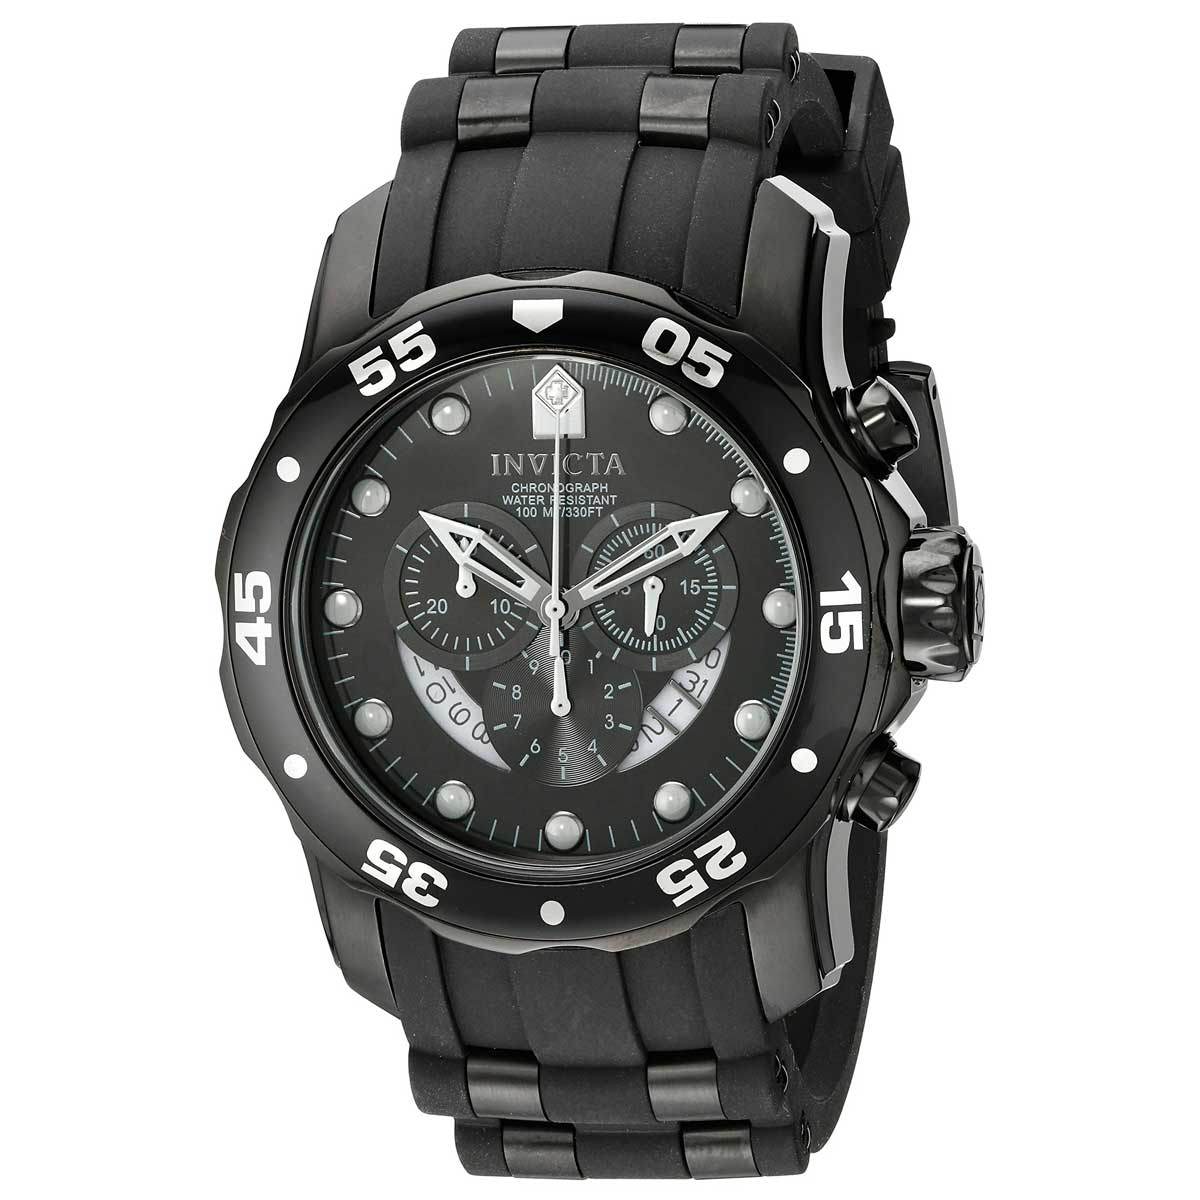 Chiếc đồng hồ Invicta nam này được thiết kế theo phong cách thể thao cá tính, mạnh mẽ với mặt số to bản 48mm